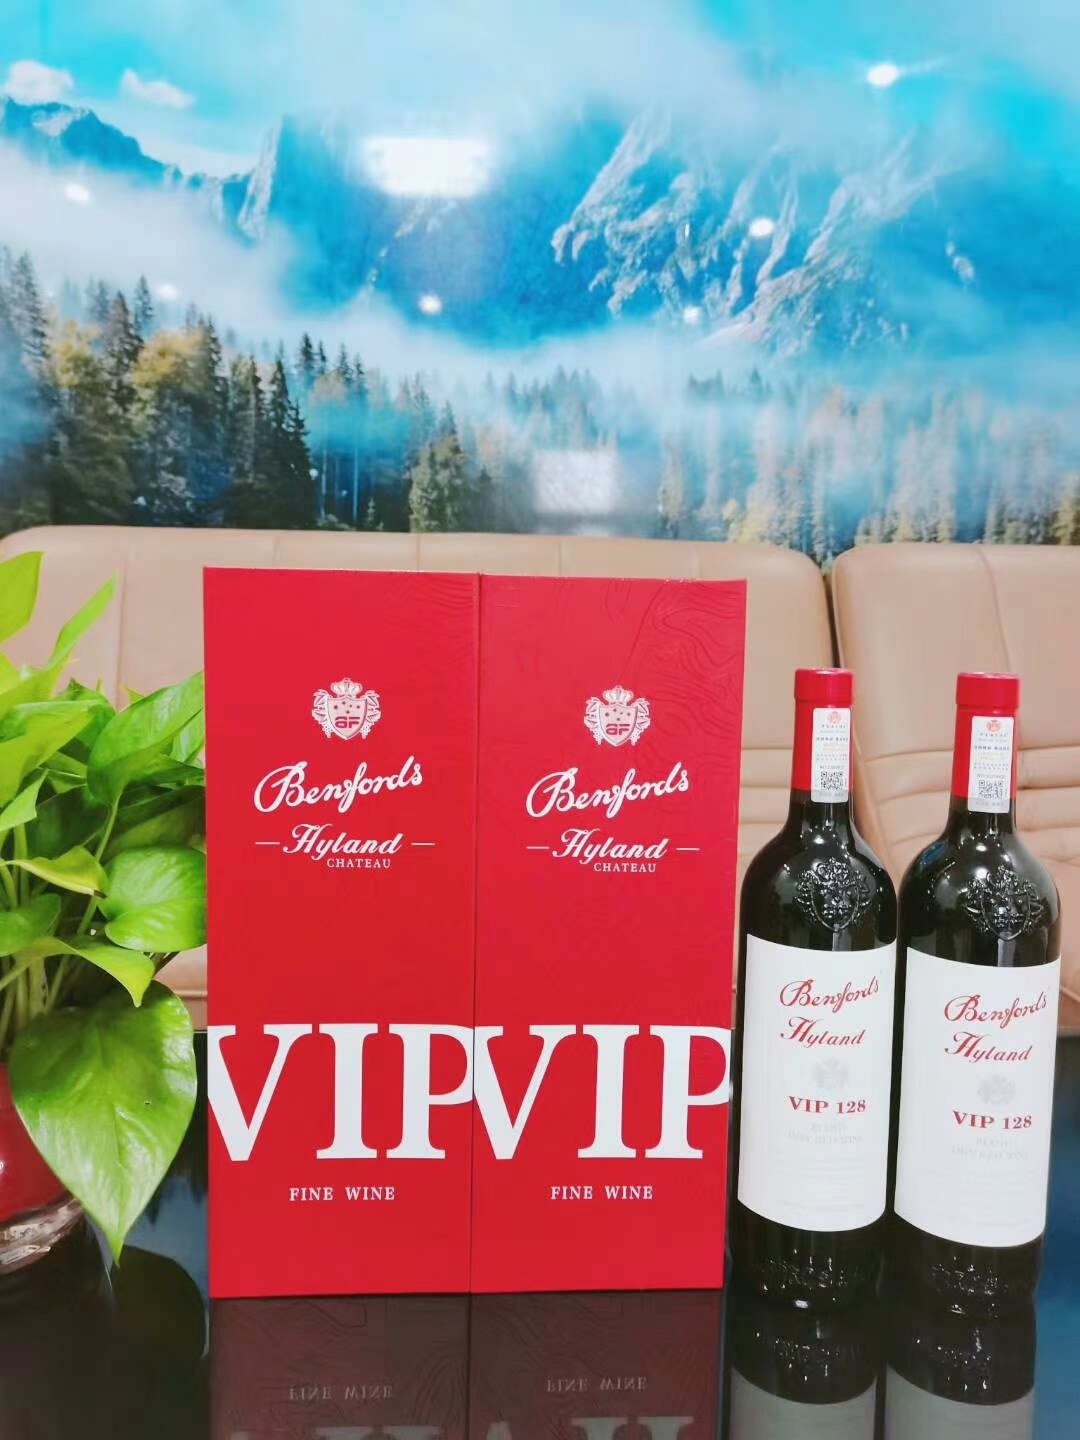 奔富VIP128干红葡萄酒 澳洲进口红酒 聚会节日送礼用酒图片